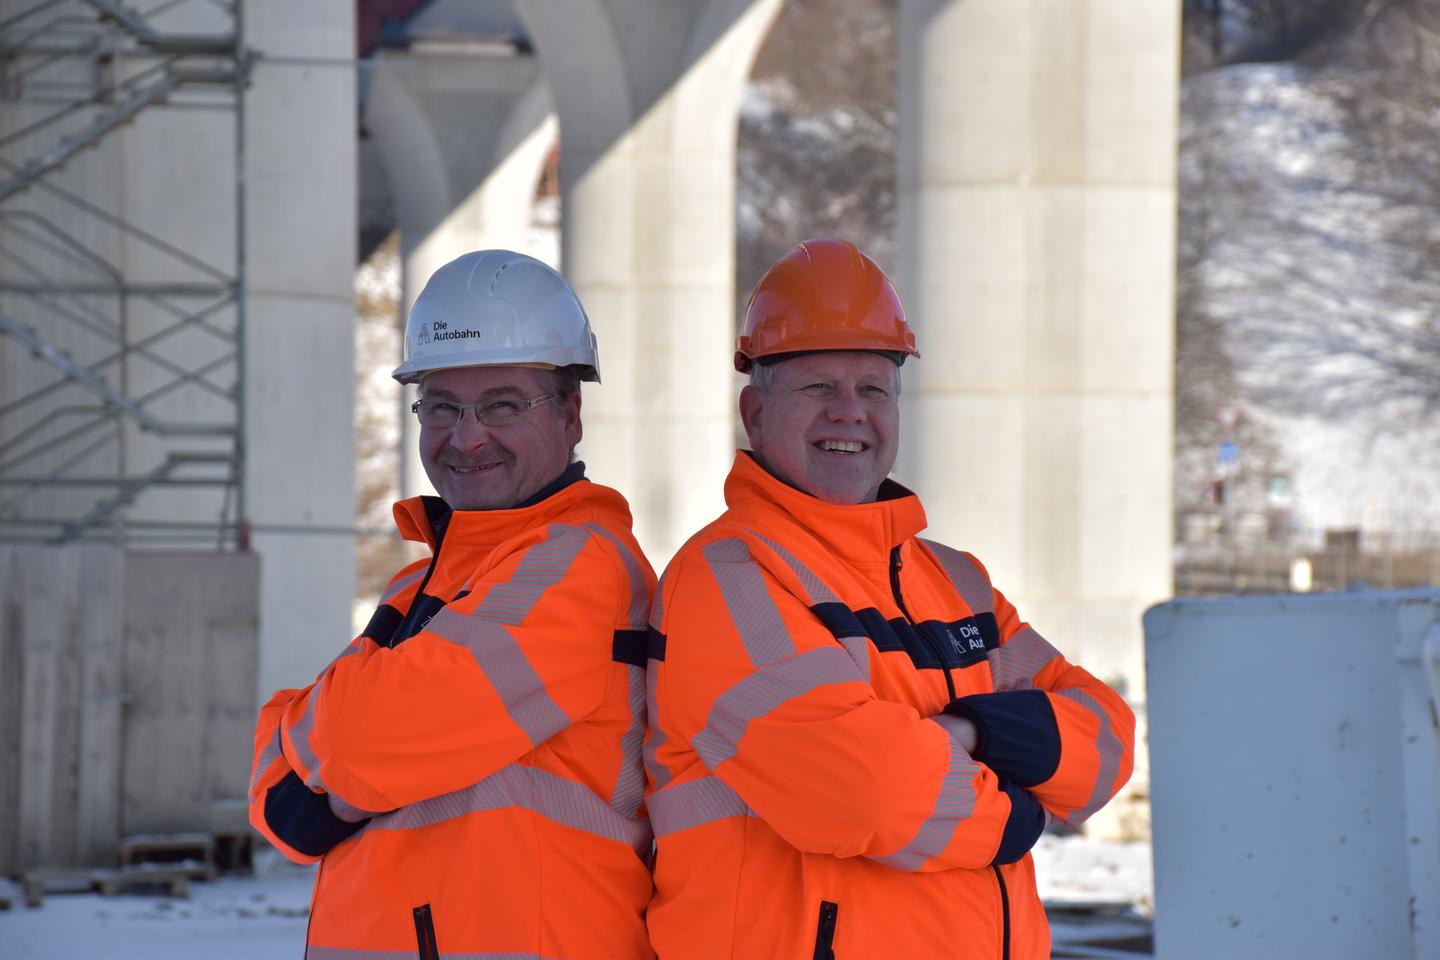 Das Bild zeigt Markus Kirchhoff (rechts) und Ulrich Laukötter, die Rücken an Rücken unter der Lennetalbrücke stehen. Beide haben einen Helm auf dem Kopf und tragen orangefarbene Warnkleindung.